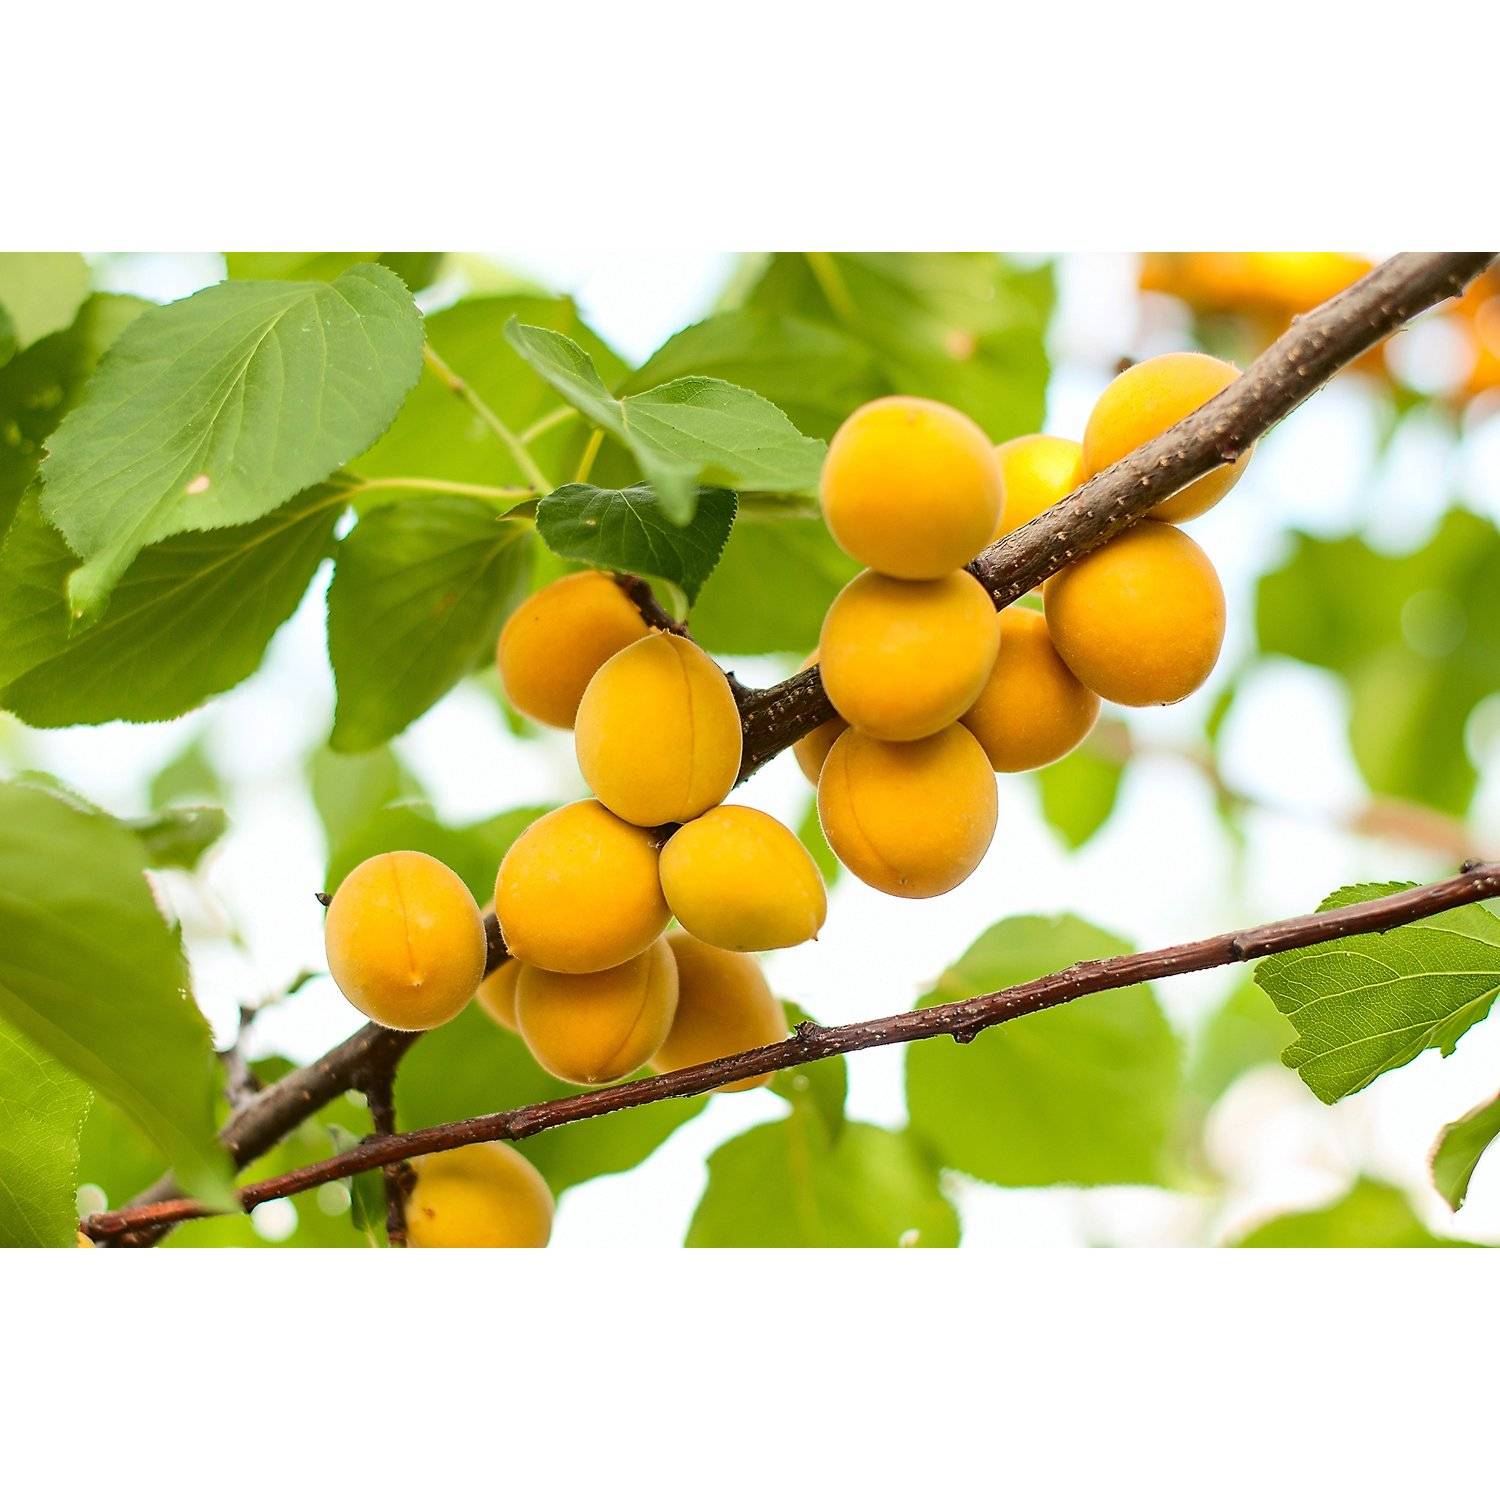 Описание сорта абрикосов водолей, характеристики плодоношения и устойчивость к заболеваниям